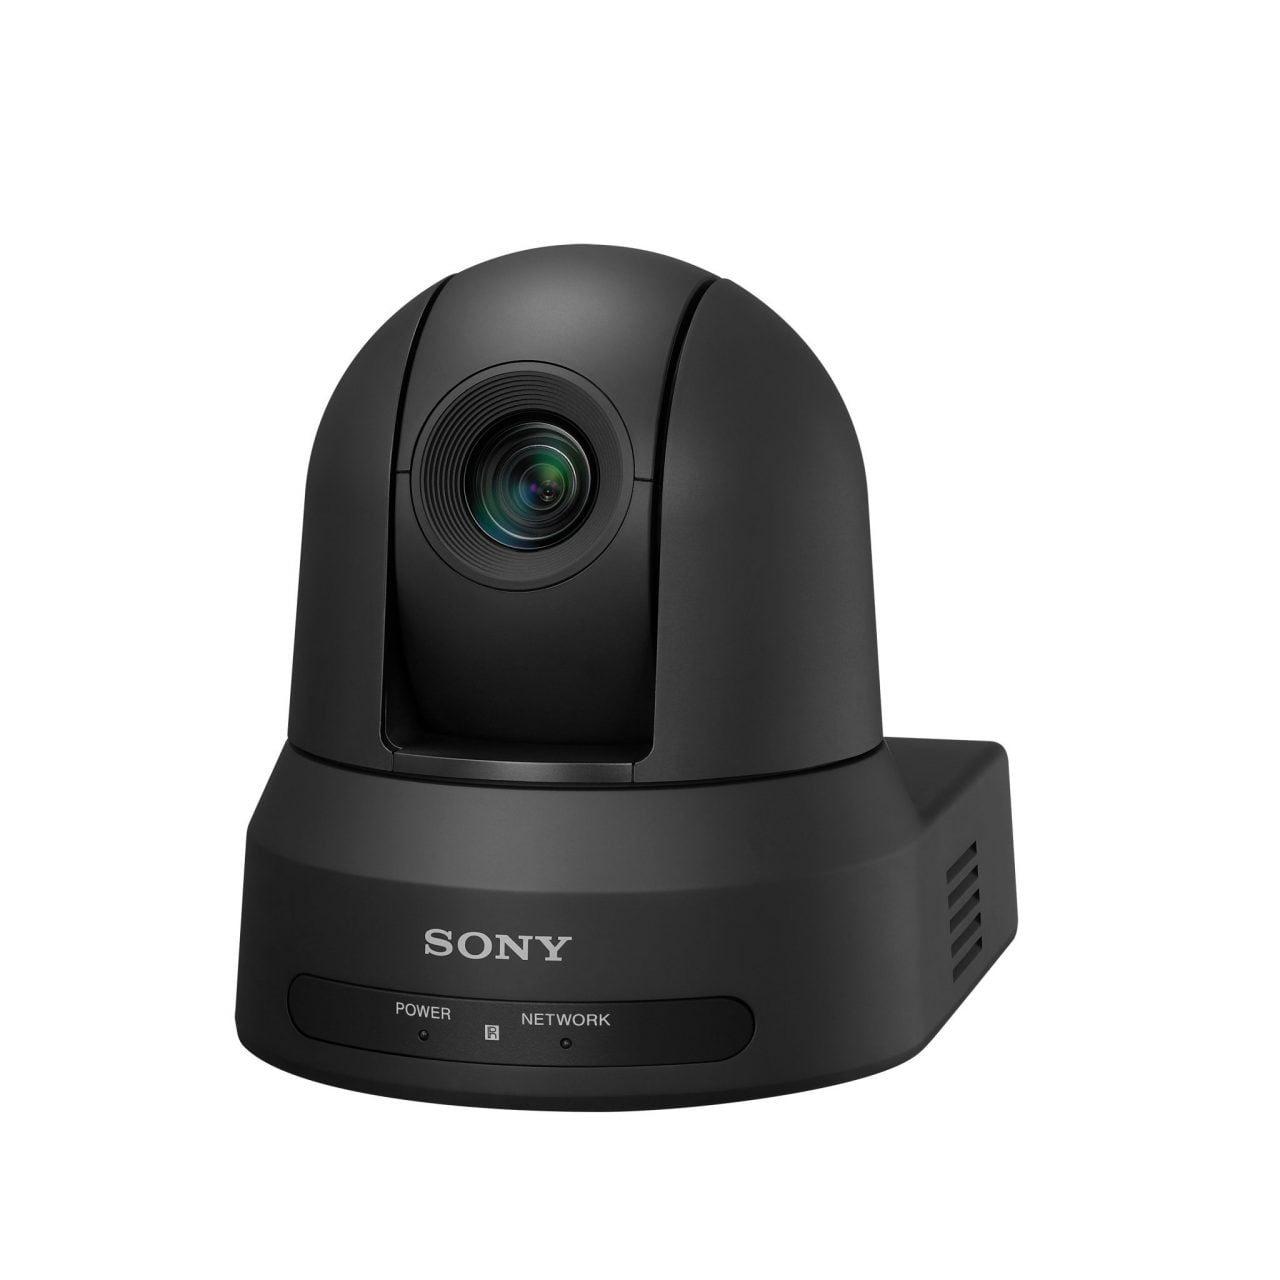 Sony espande la line-up di telecamere Pan/Tilt/Zoom ad elevate prestazioni IP-based con funzionalità NDI®/HX¹ 3